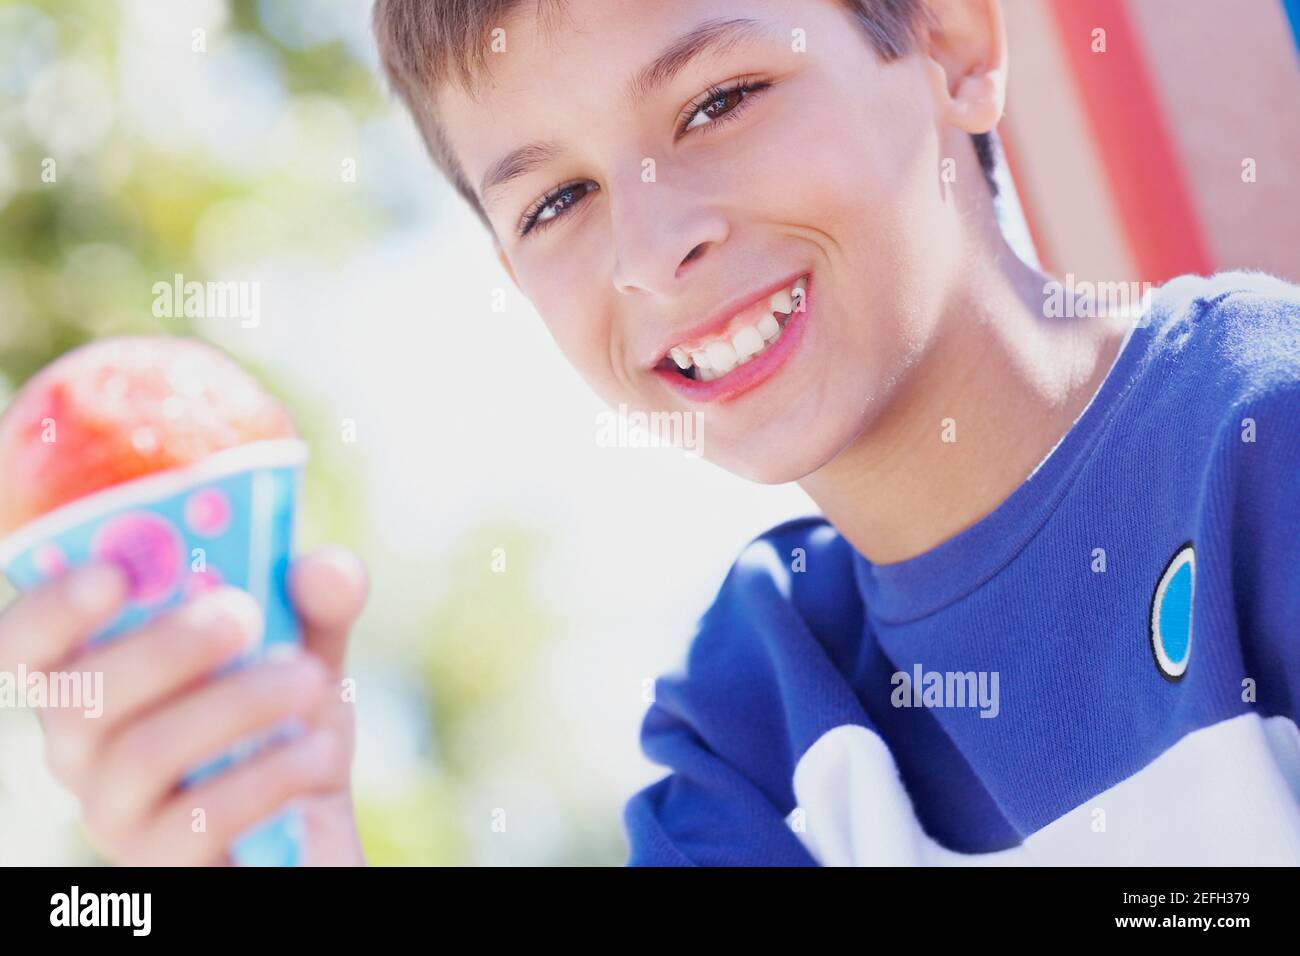 Porträt eines Jungen im Teenageralter, der lächelt und ein Eis hält Kegel Stockfoto